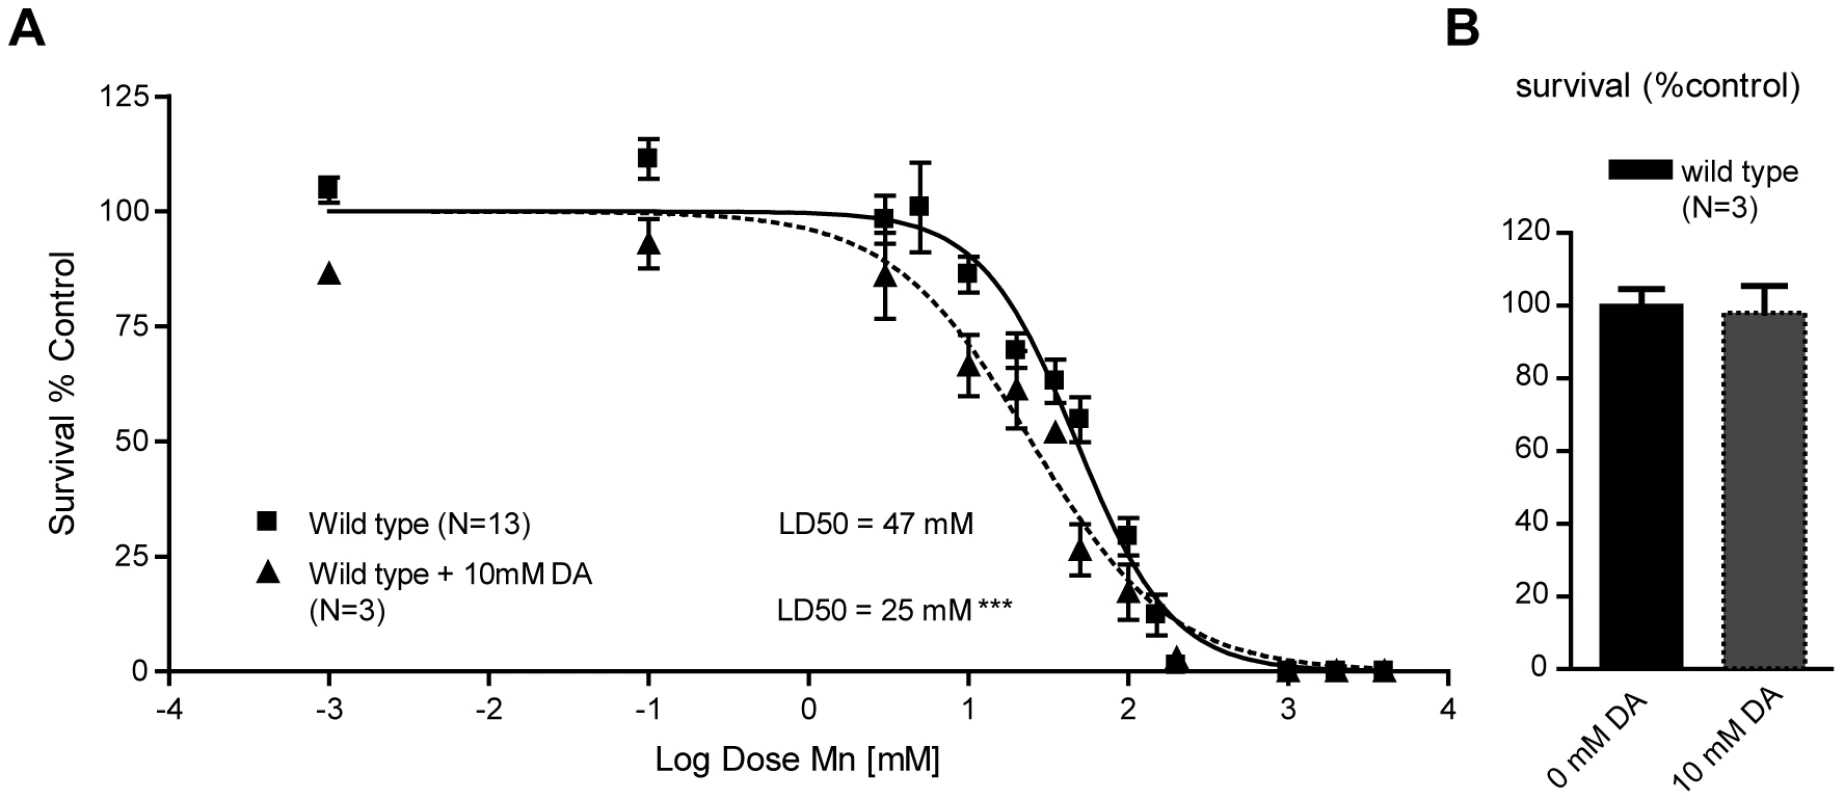 Sub-lethal dopamine pre-treatment sensitizes wild-type worms to Mn exposure.